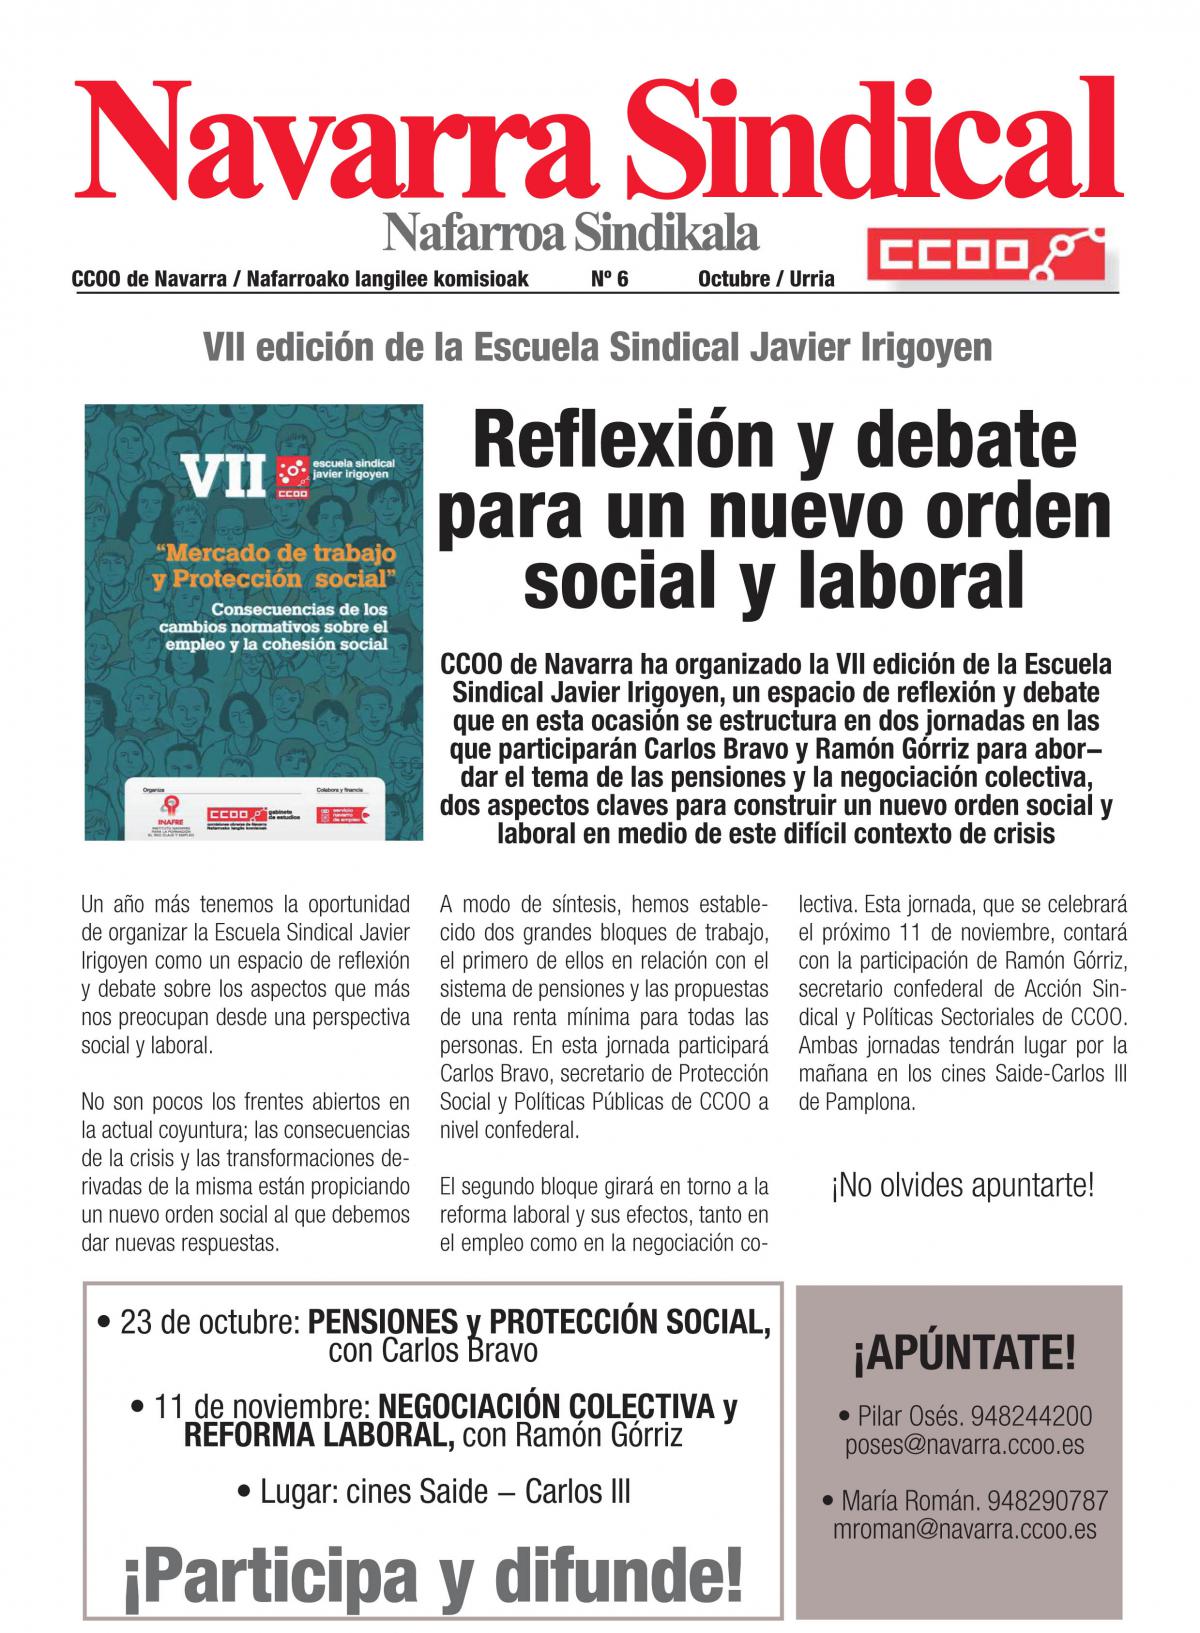 VII edición de la Escuela Sindical Javier Irigoyen. Reflexión y debate para un nuevo orden social y laboral